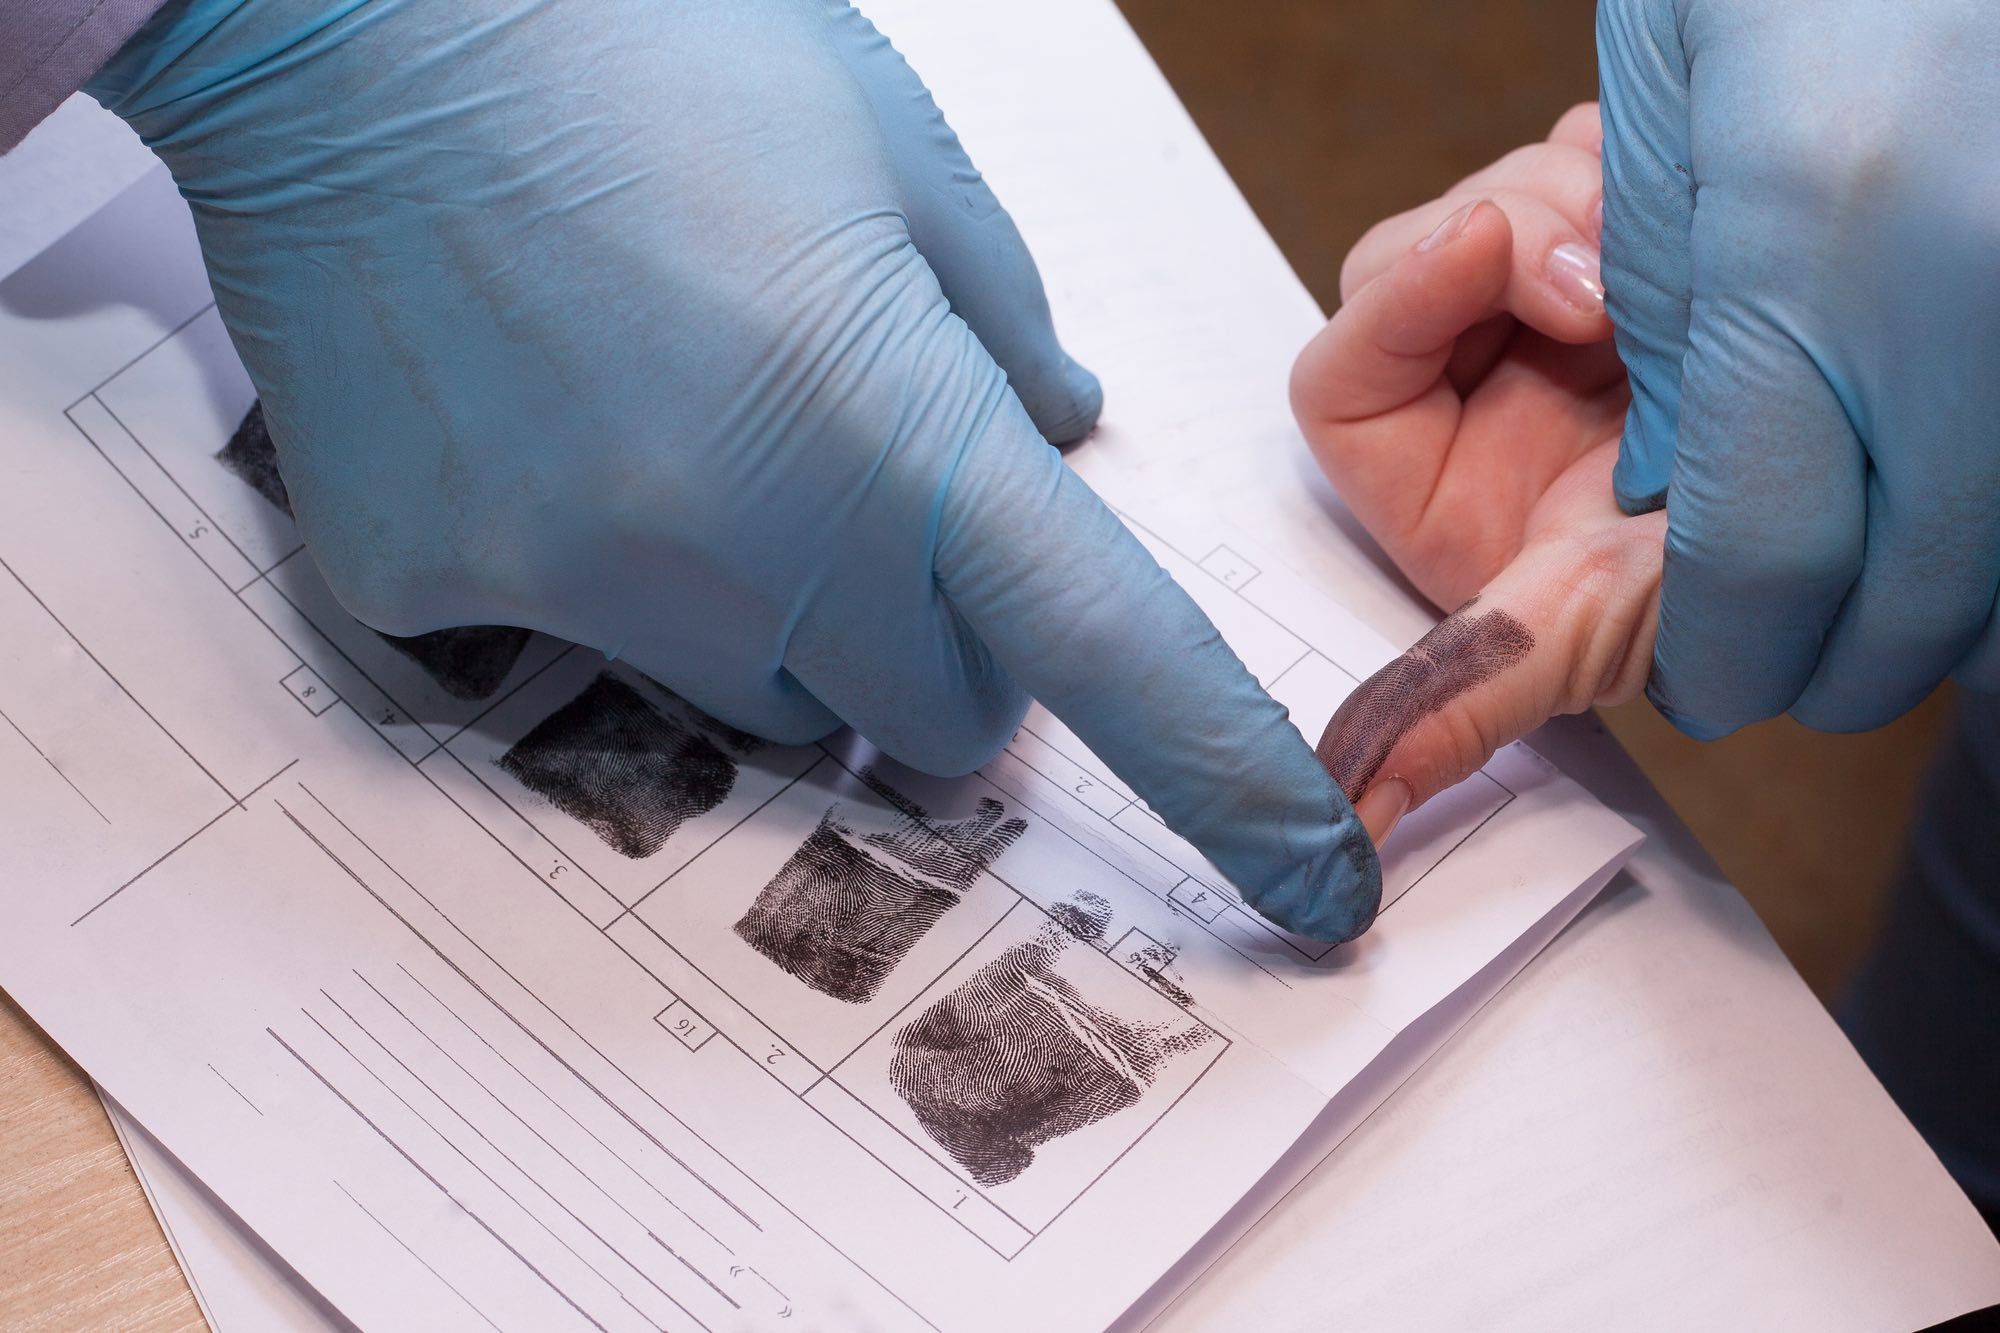 Criminal being fingerprinted for criminal record